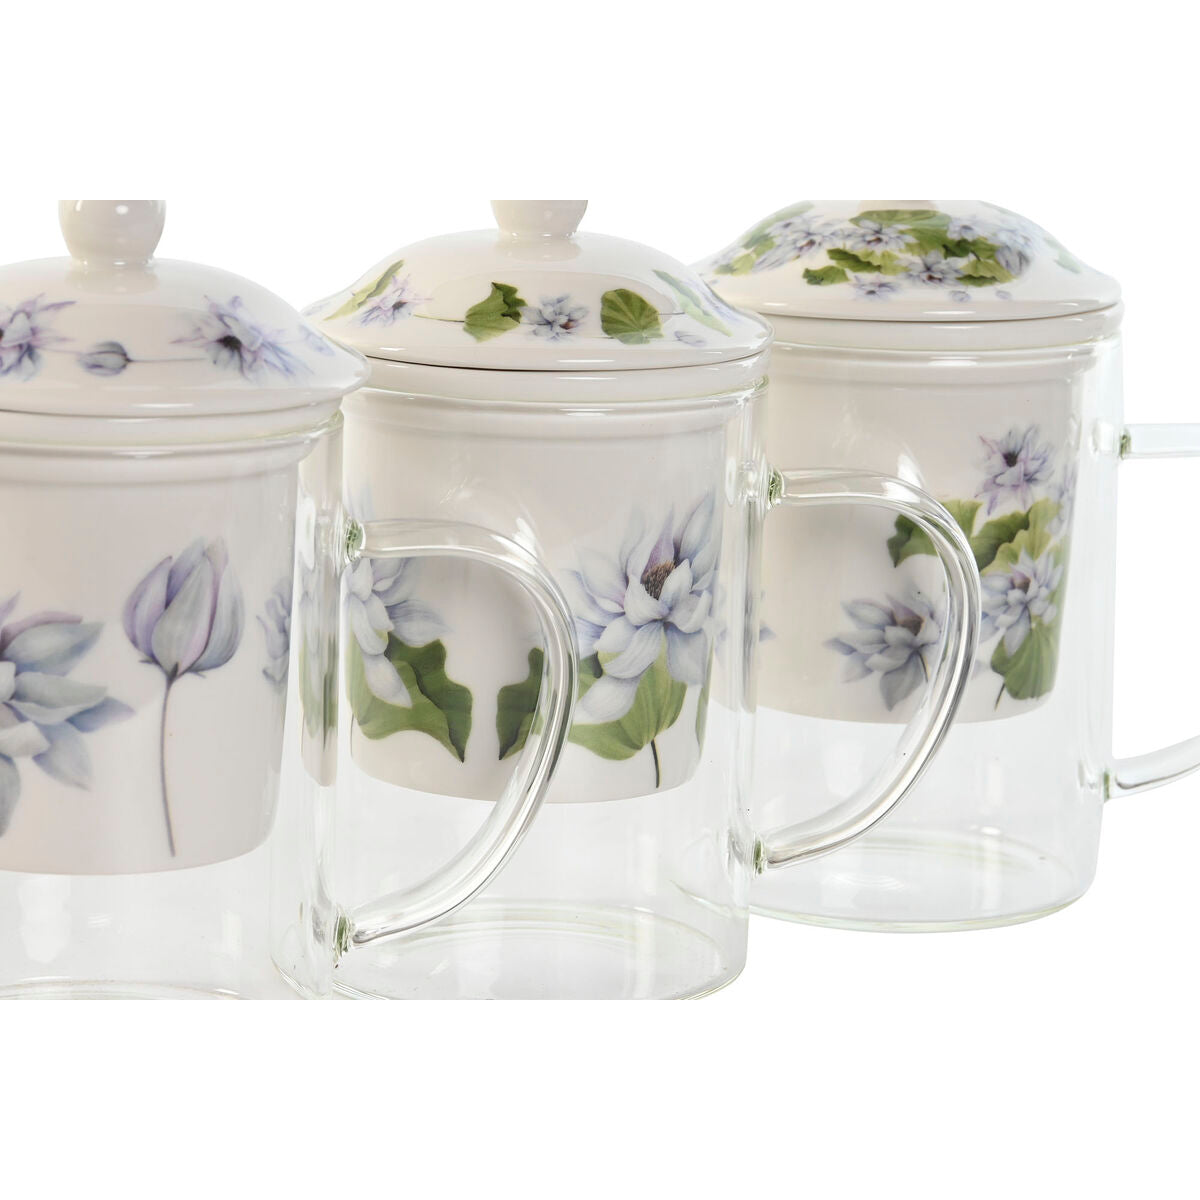 Filtertasse für Teeaufgüsse DKD Home Decor Blau Weiß grün Kristall Porzellan 300 ml (3 Stück)